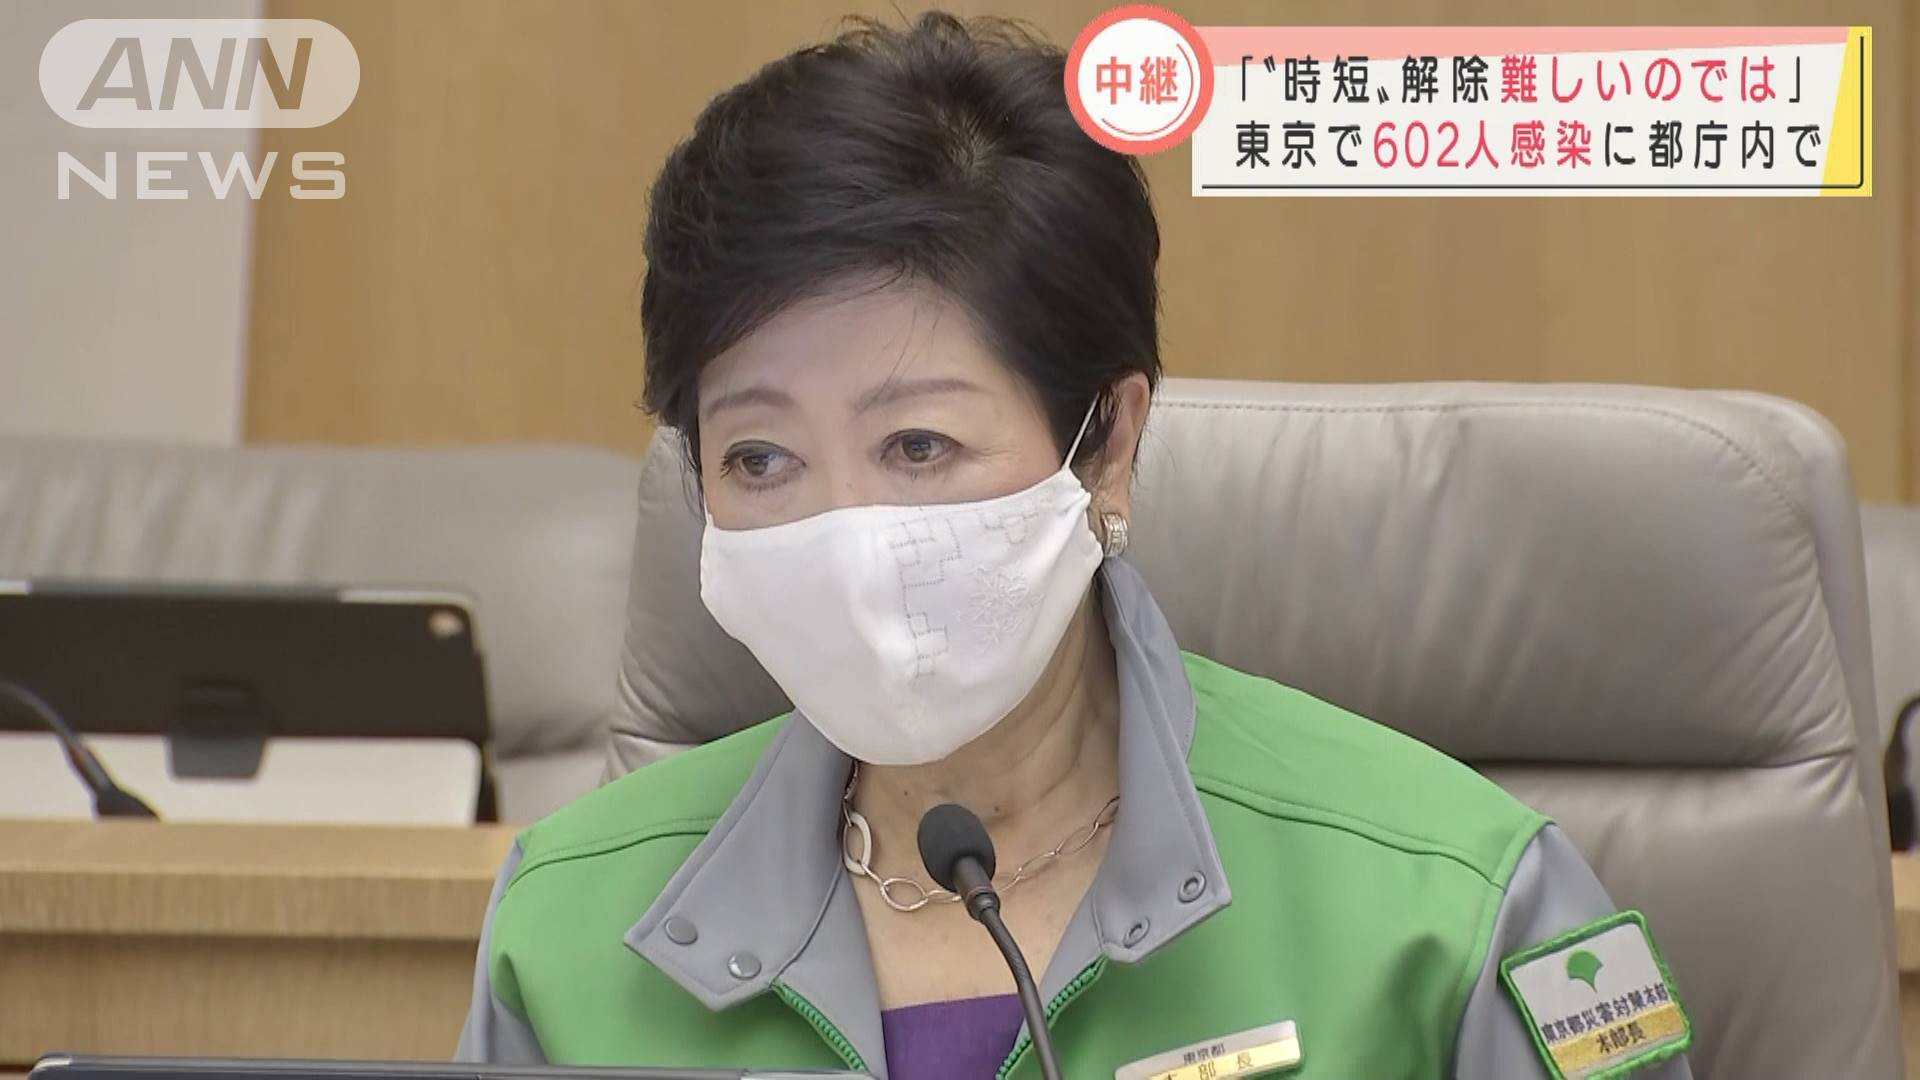 東京都は 感染者数より入院患者数の増加に危機感 テレ朝news テレビ朝日のニュースサイト